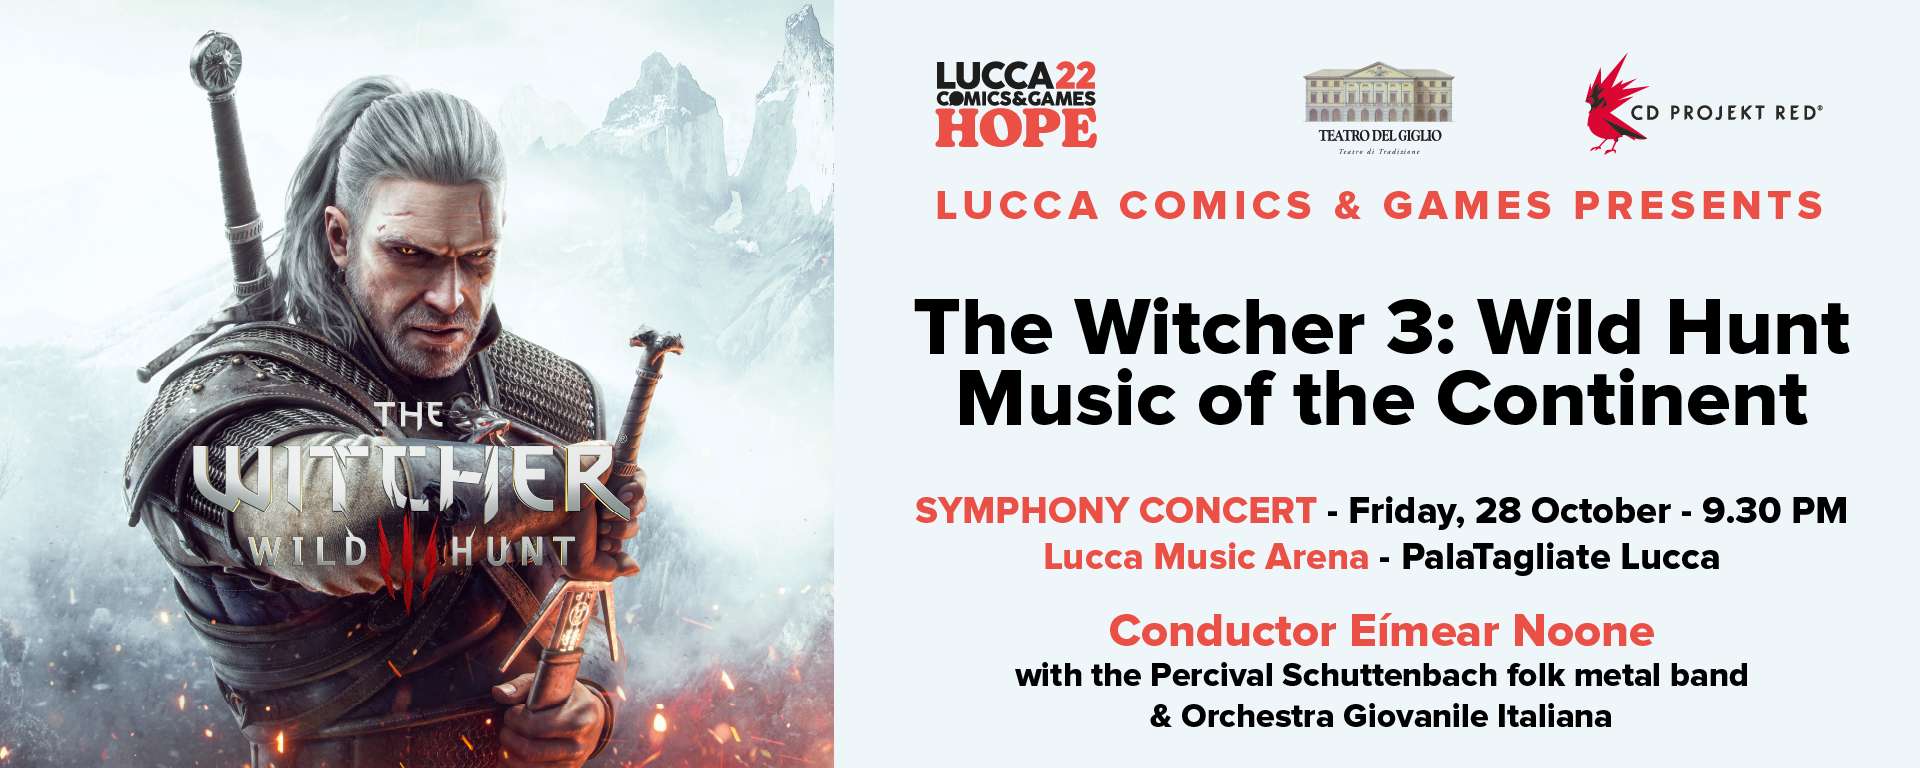 The Witcher 3: Wild Hunt - Music from the Continent: biglietti disponibili